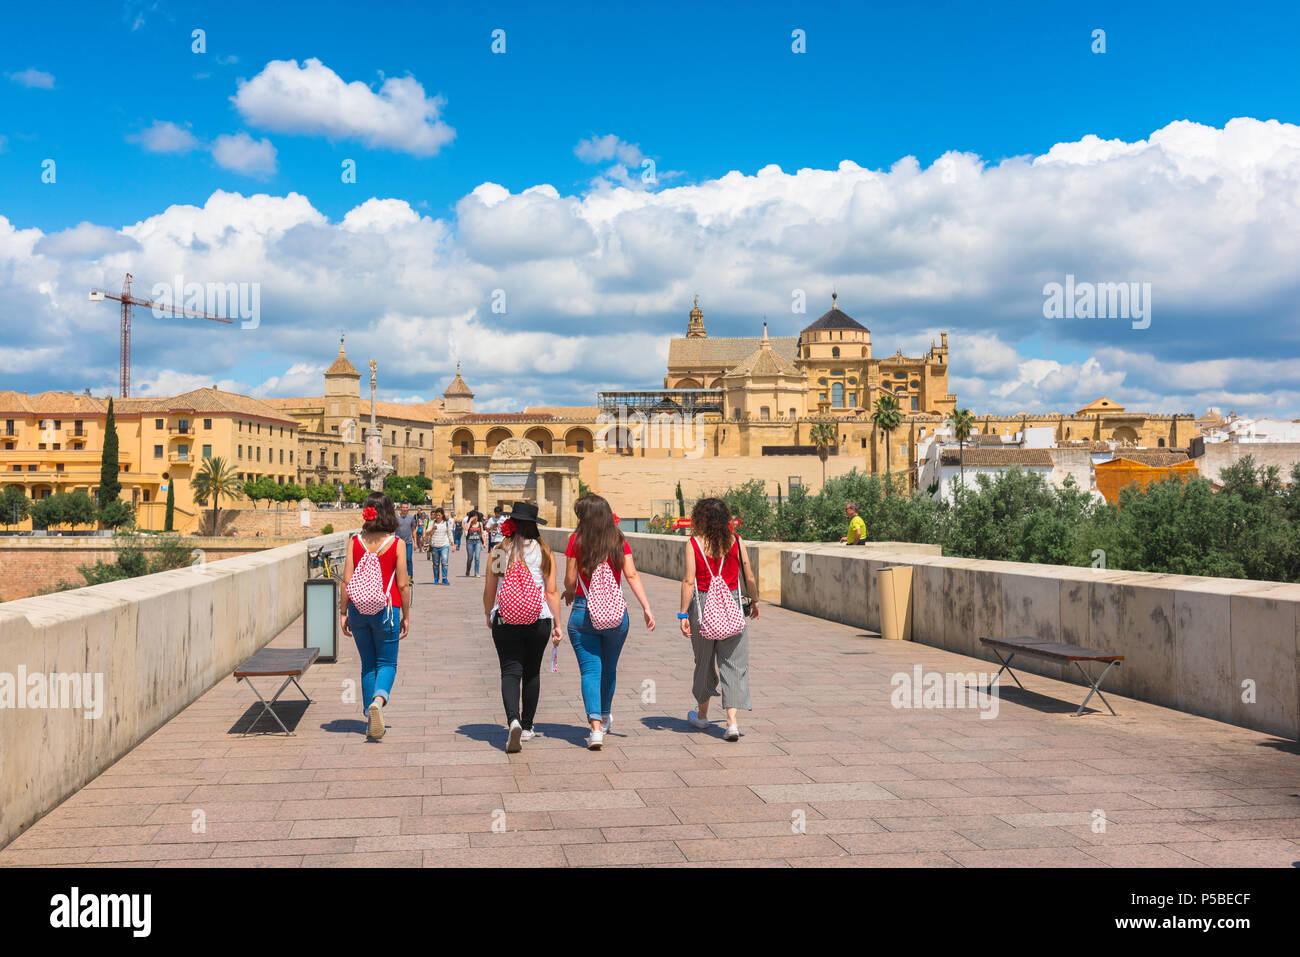 Jeunes femmes amis, vue arrière d'un groupe de jeunes femmes espagnoles traversant le pont romain de Cordoue, avec la cathédrale / la mosquée Mezquita devant vous. Banque D'Images